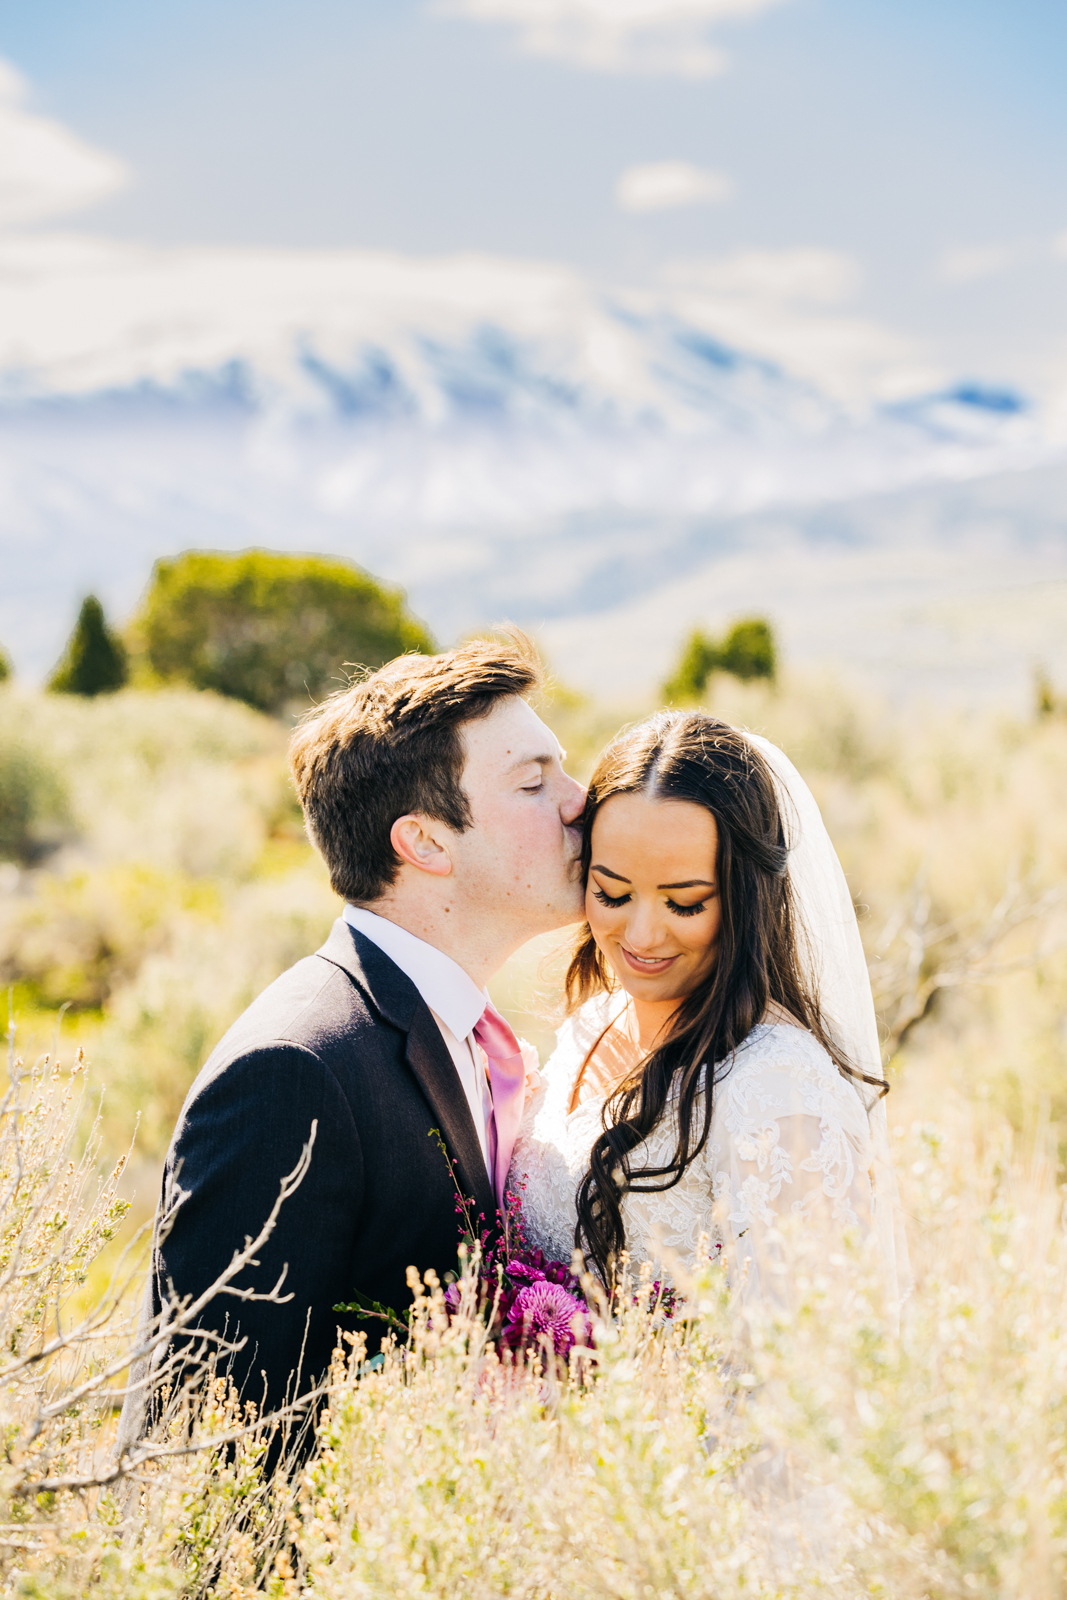 Jackson Hole wedding photographer captures couple is close and kissing at jackson hole wedding